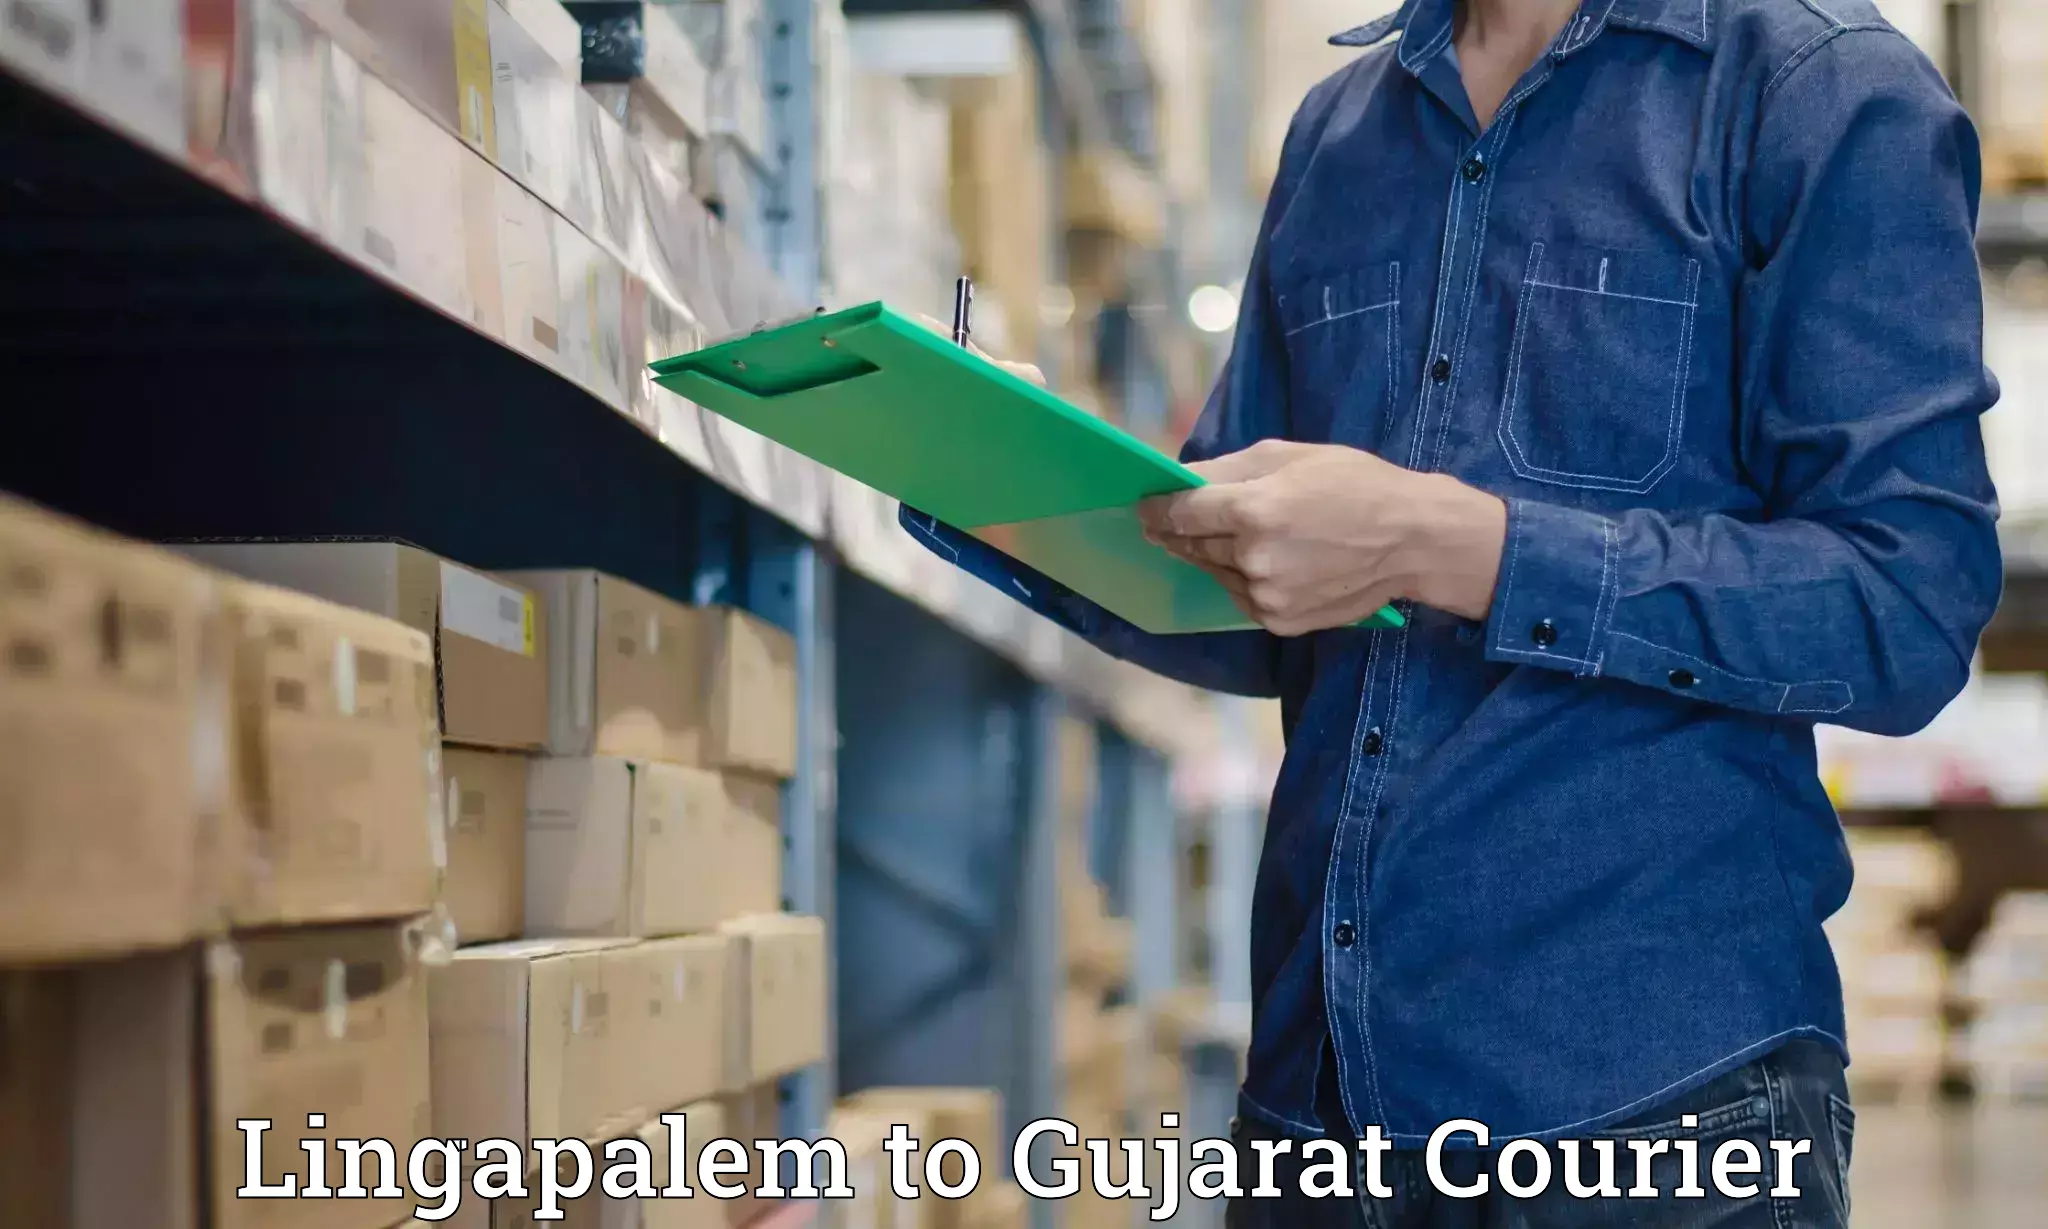 International parcel service Lingapalem to Gujarat